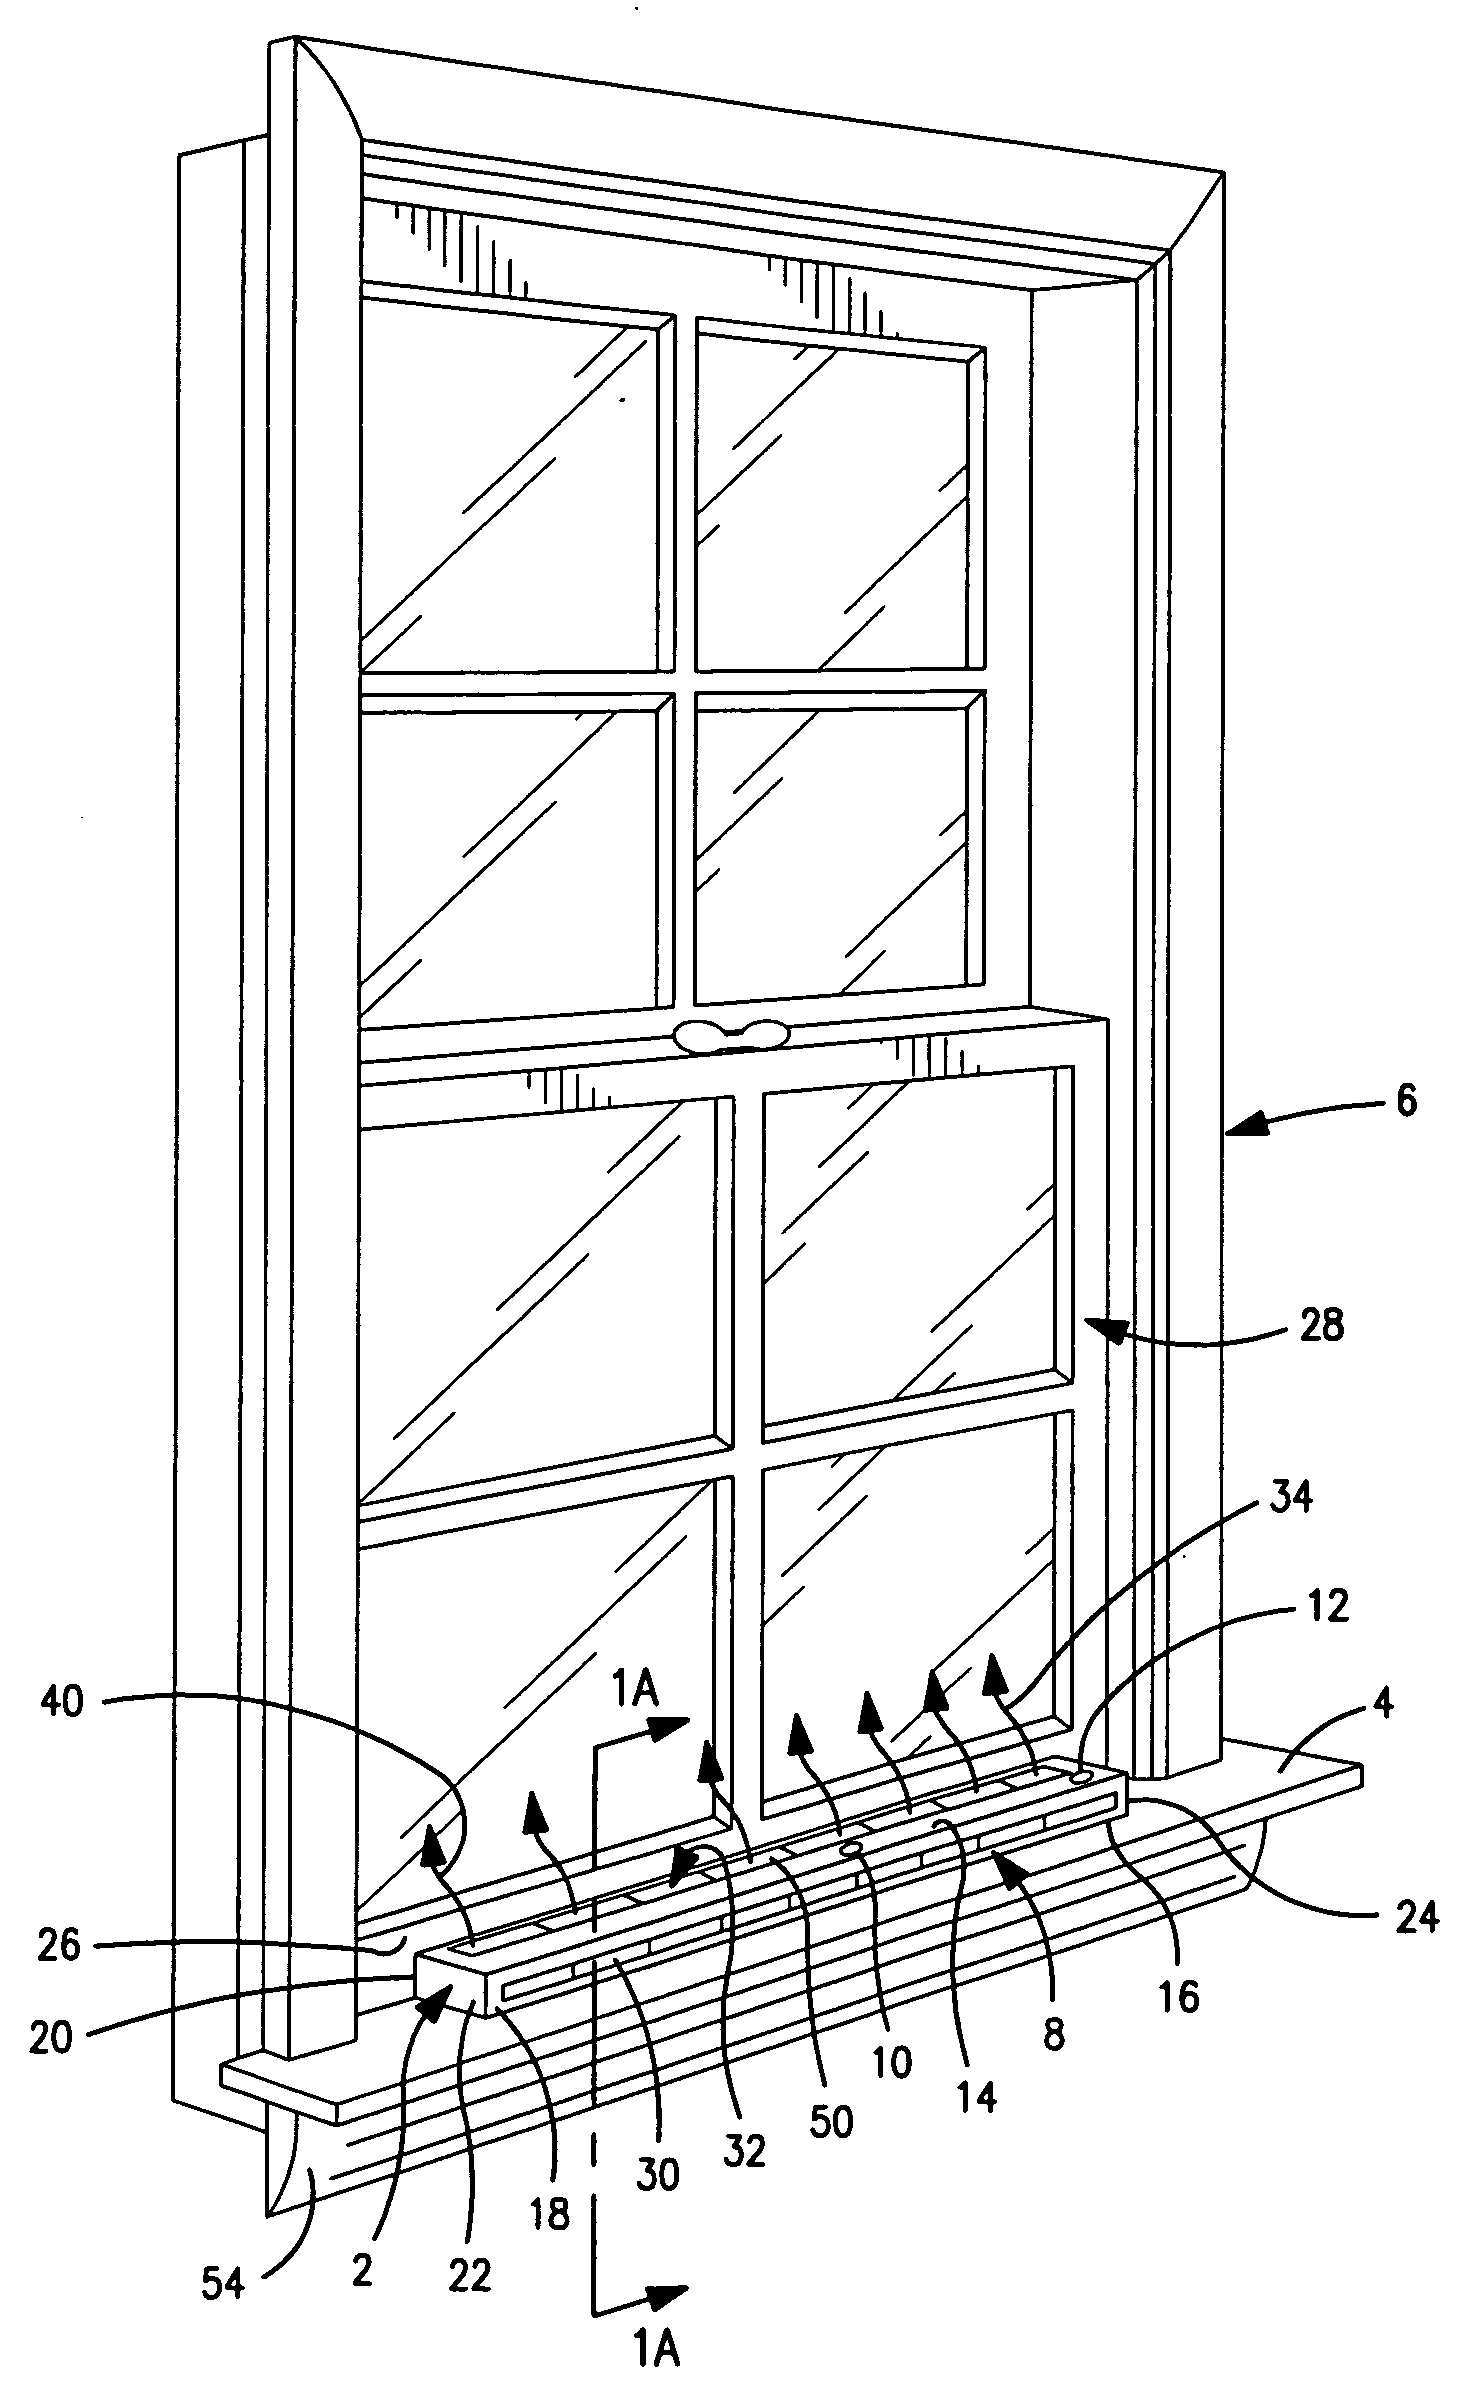 Window condensation control